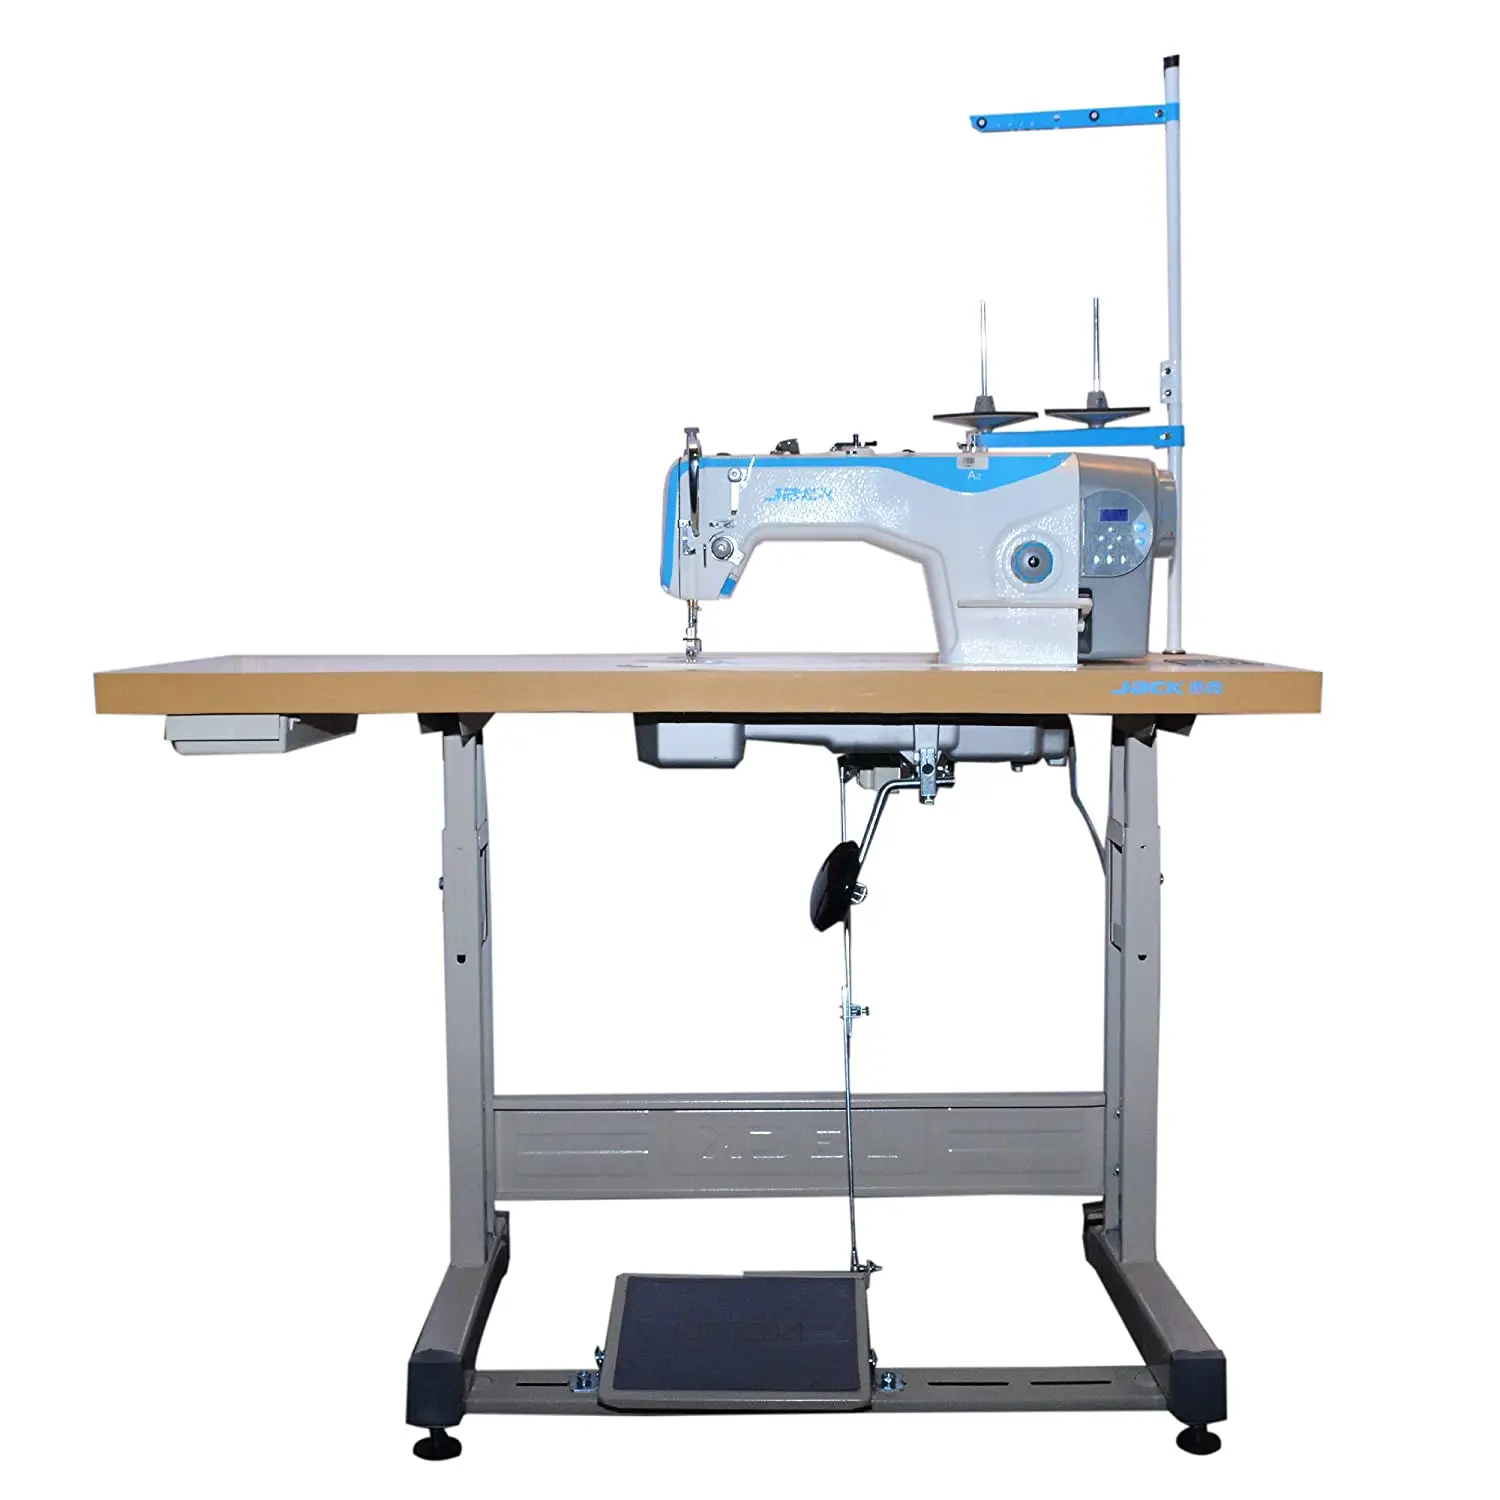 стол для промышленной швейной машины jack